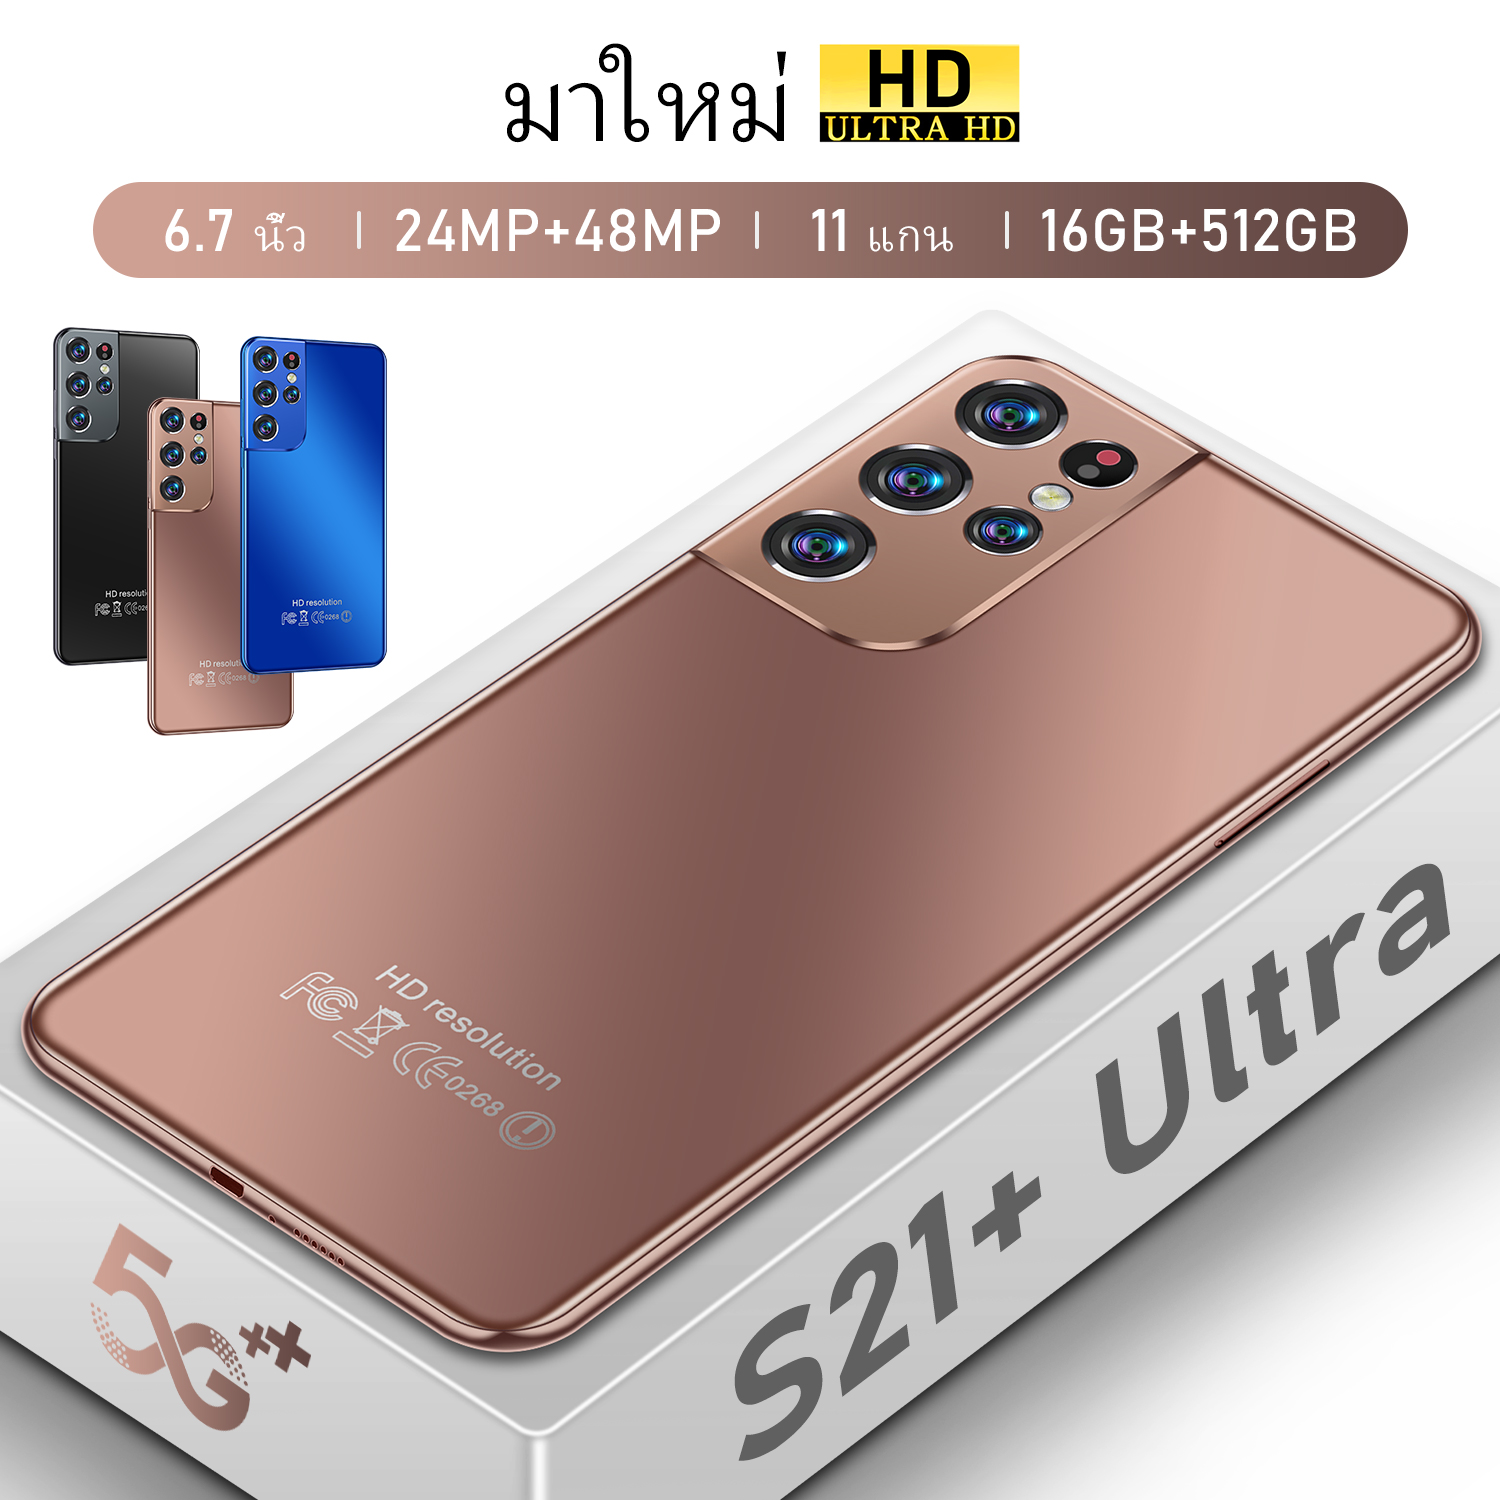 ​​เมณูภาษาไทย S21 Ultra 8GB RAM 256GB ROM กล้องหน้า 24MPกล้องหลัง 48MP บตเตอรี่ 6500mAh รองรับซิมการ์ดไทยทุกรุ่นส่งฟรีในไทยจัดส่งคู่ card dual standby สาม